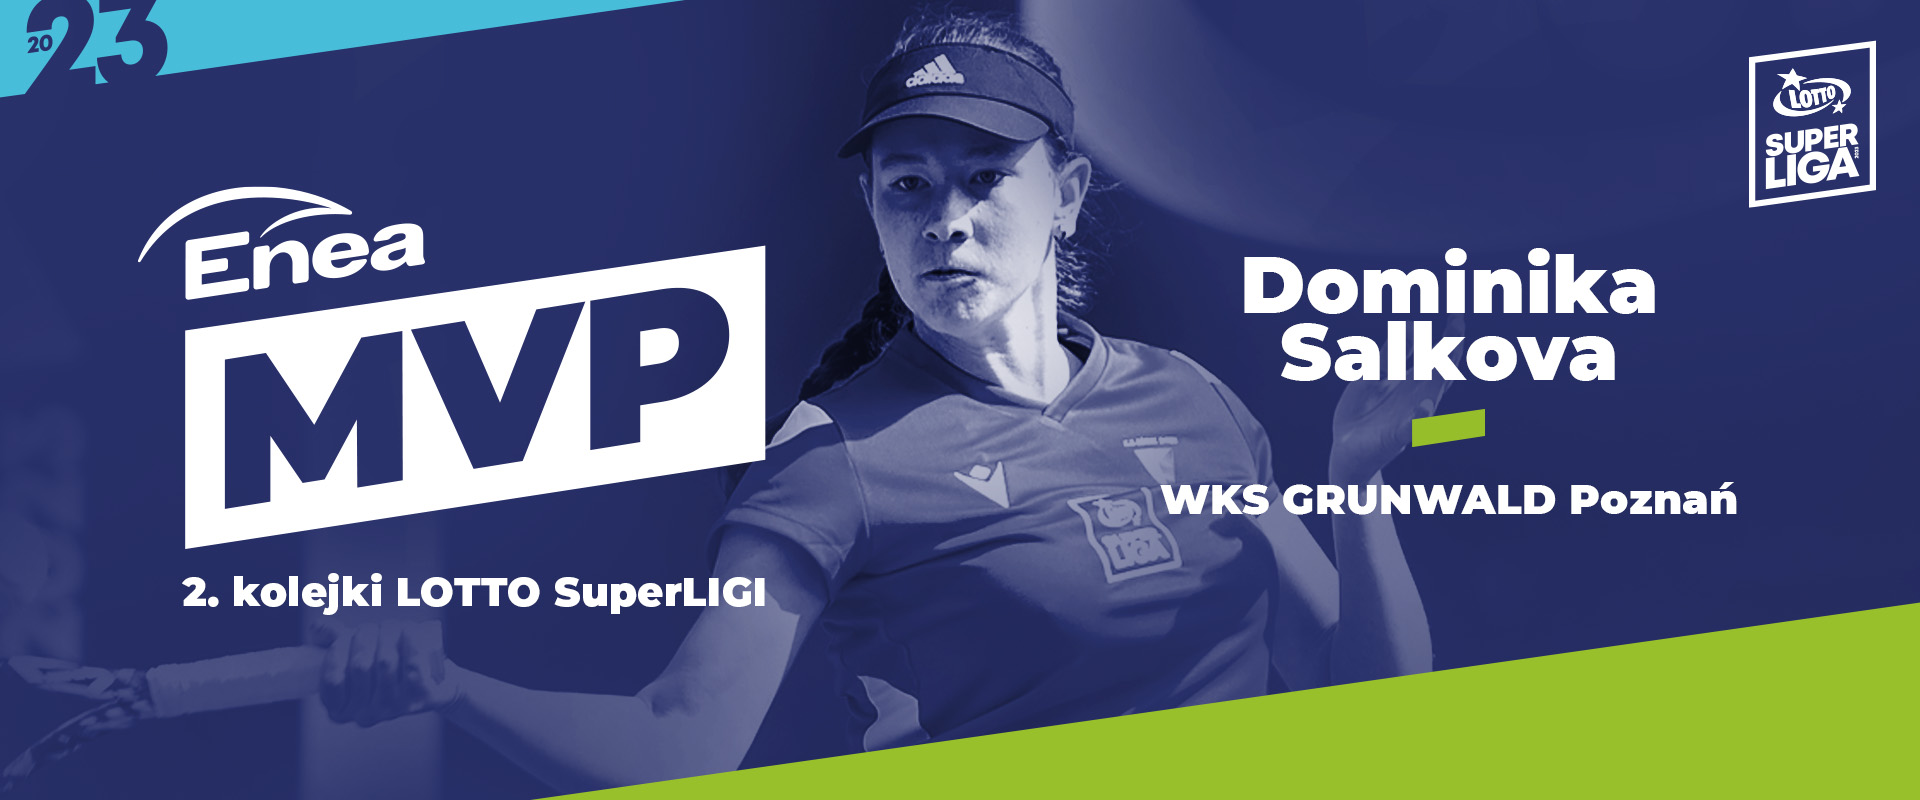 Dominika Salkova – Enea MVP der 2. Runde